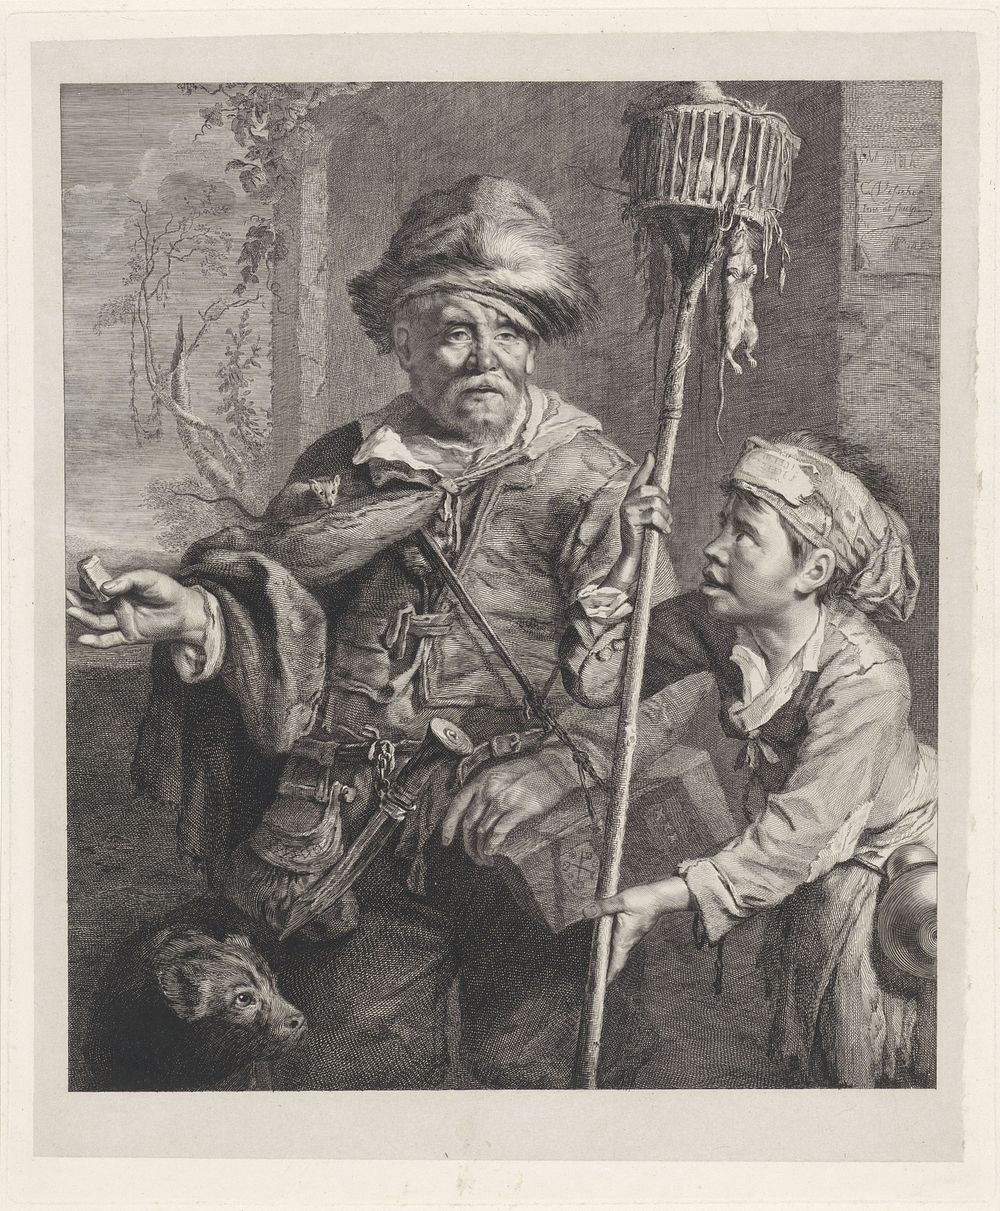 De rattenvanger met zijn knecht (1826 - 1886) by Dirk Jurriaan Sluyter, Cornelis Visscher II and Cornelis Visscher II